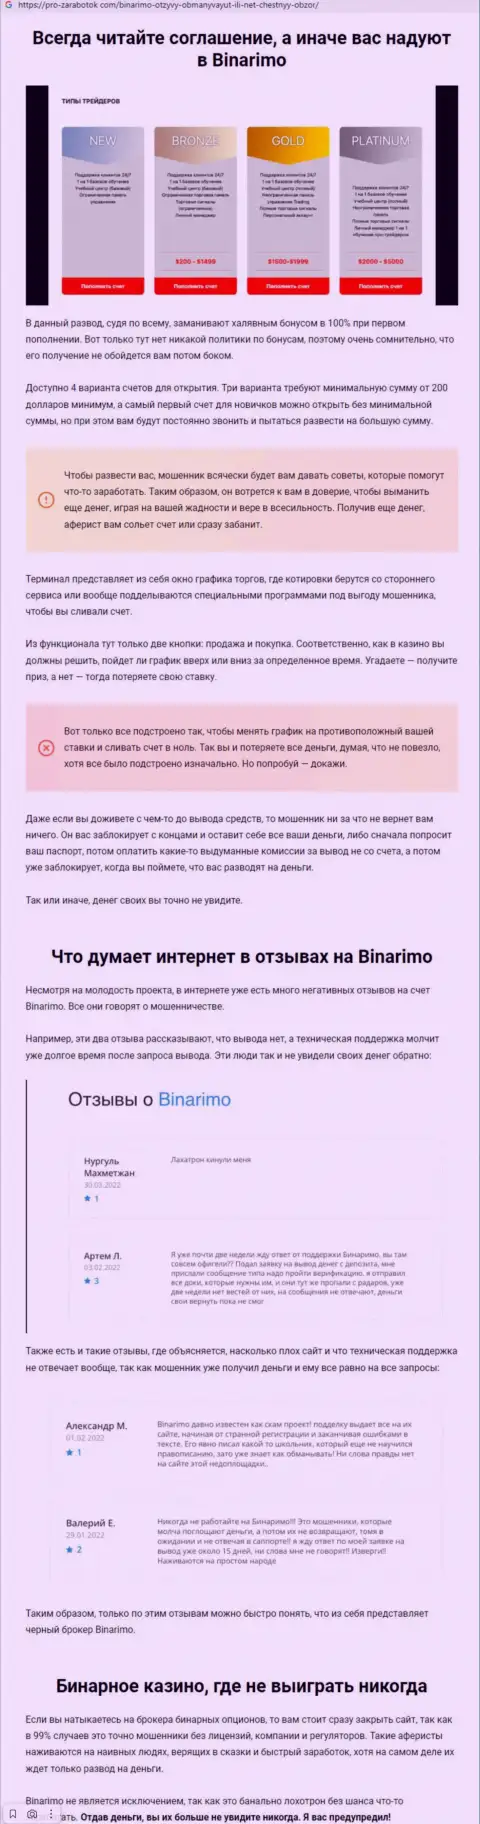 Binarimo - это мошенники, которым средства доверять не нужно ни при каких обстоятельствах (обзор противозаконных деяний)